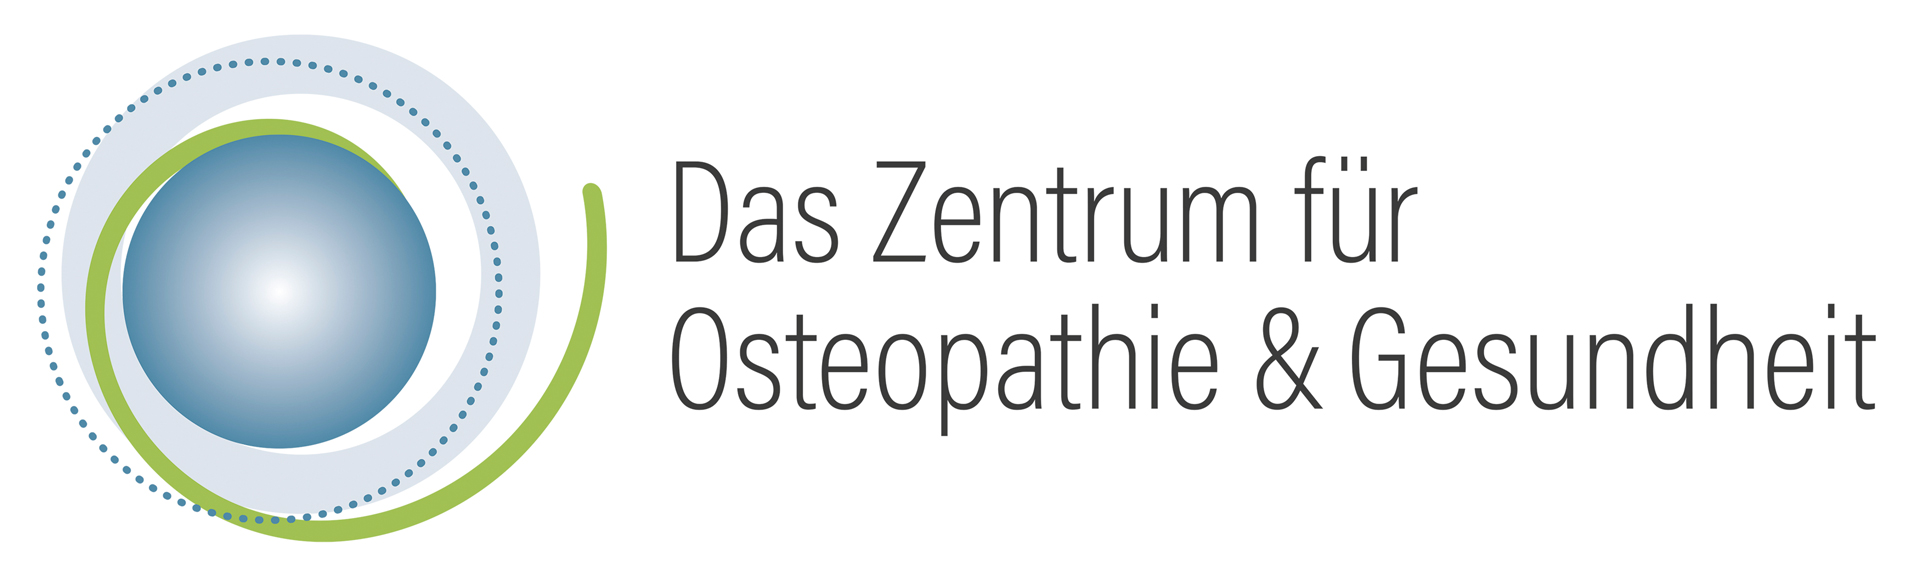 Das Zentrum für Osteopathie